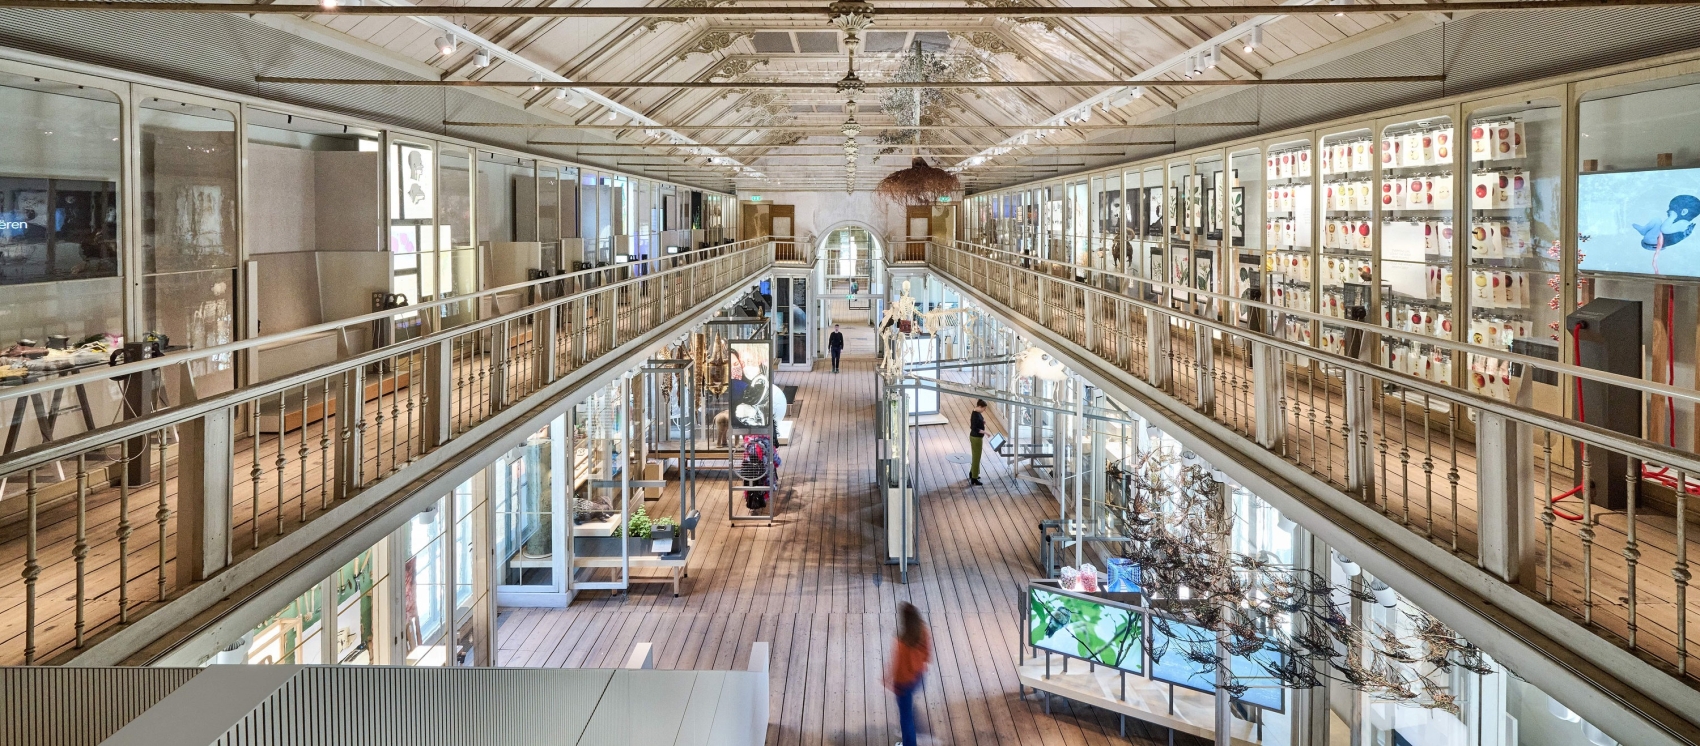 Museo Groote: descubra las similitudes entre el hombre y la naturaleza